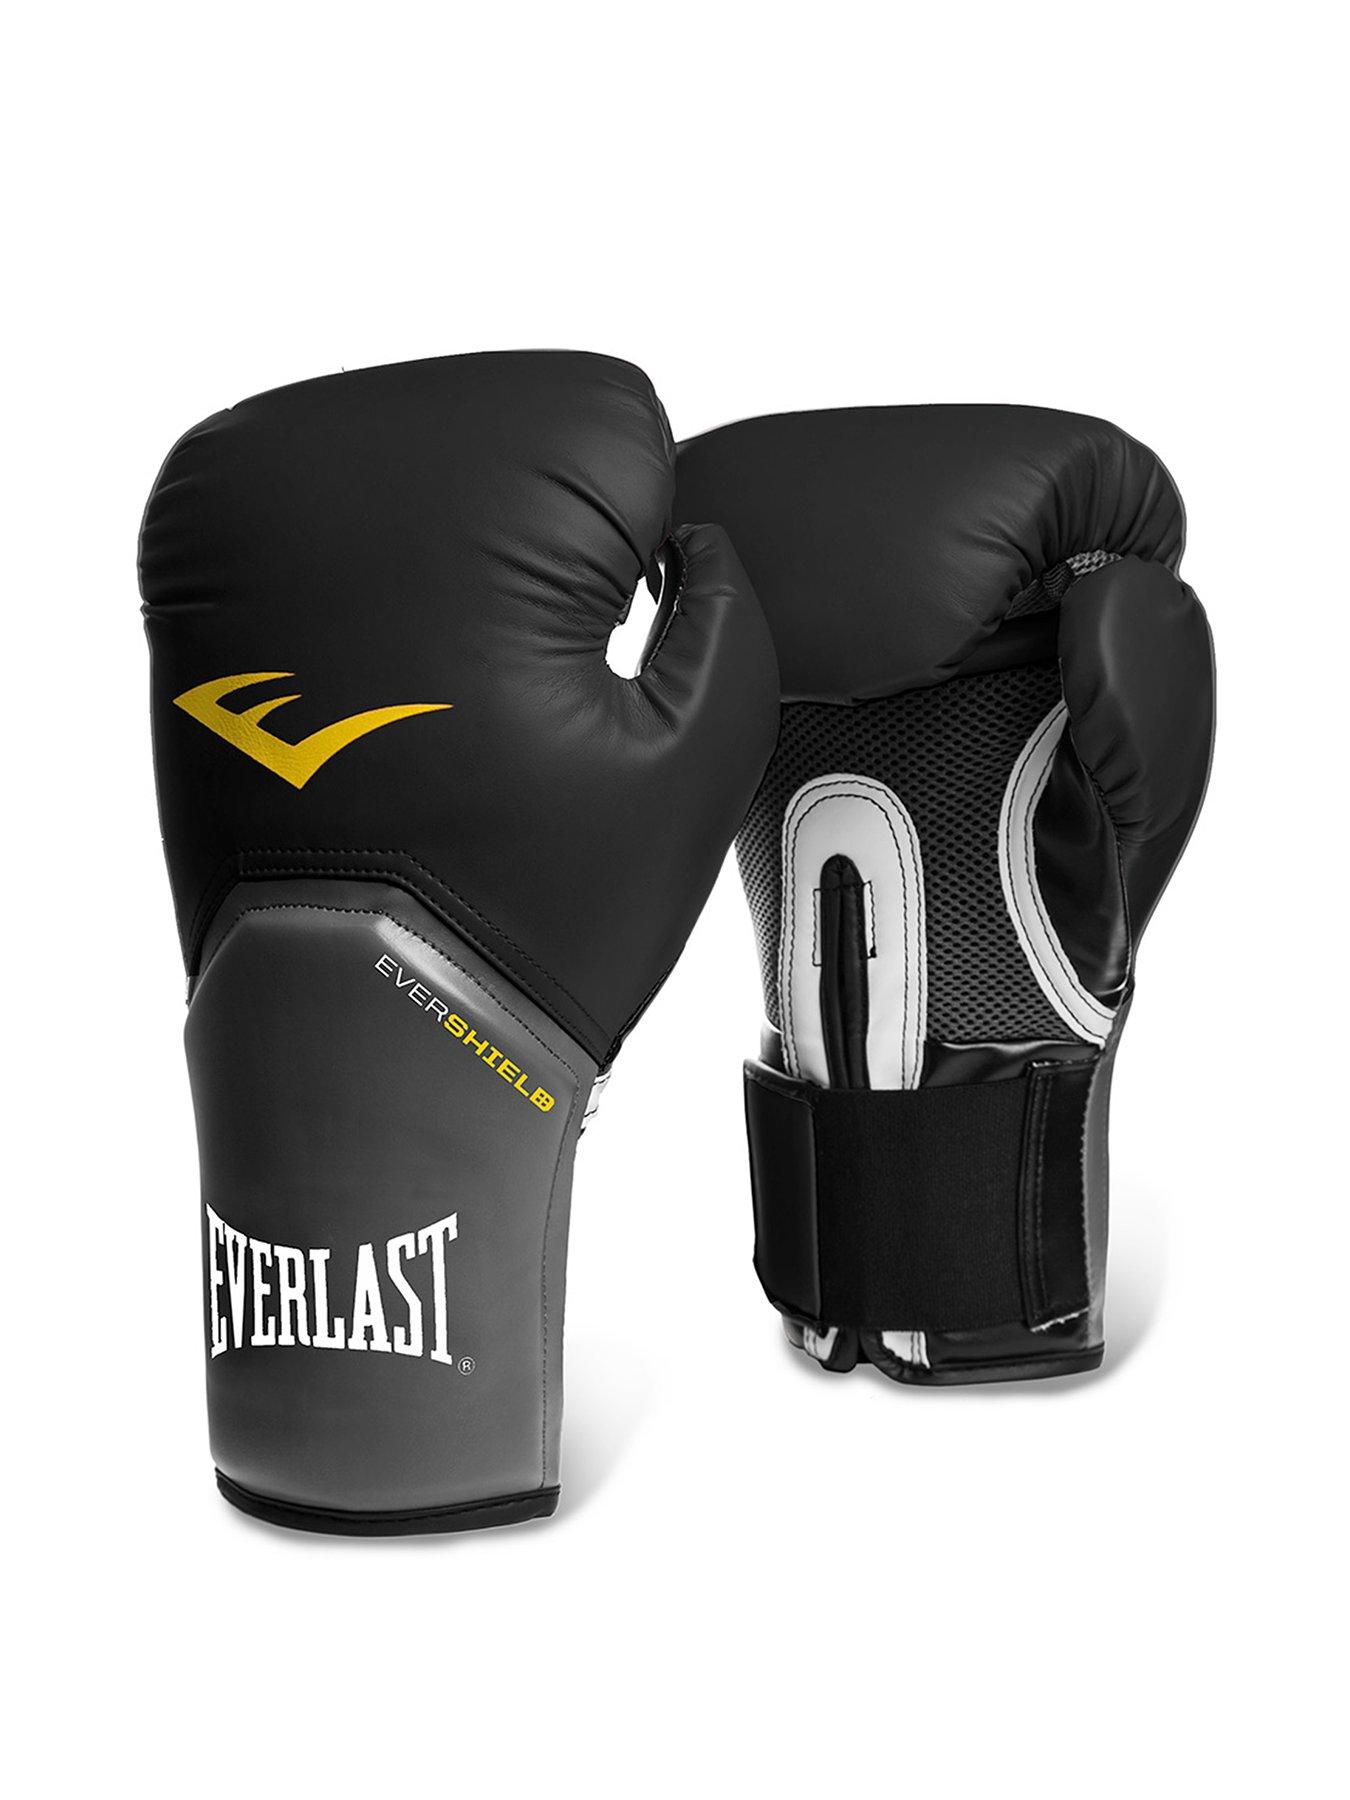 Everlast Boxing 16oz Pro Style Elite Training Glove - Black | very.co.uk